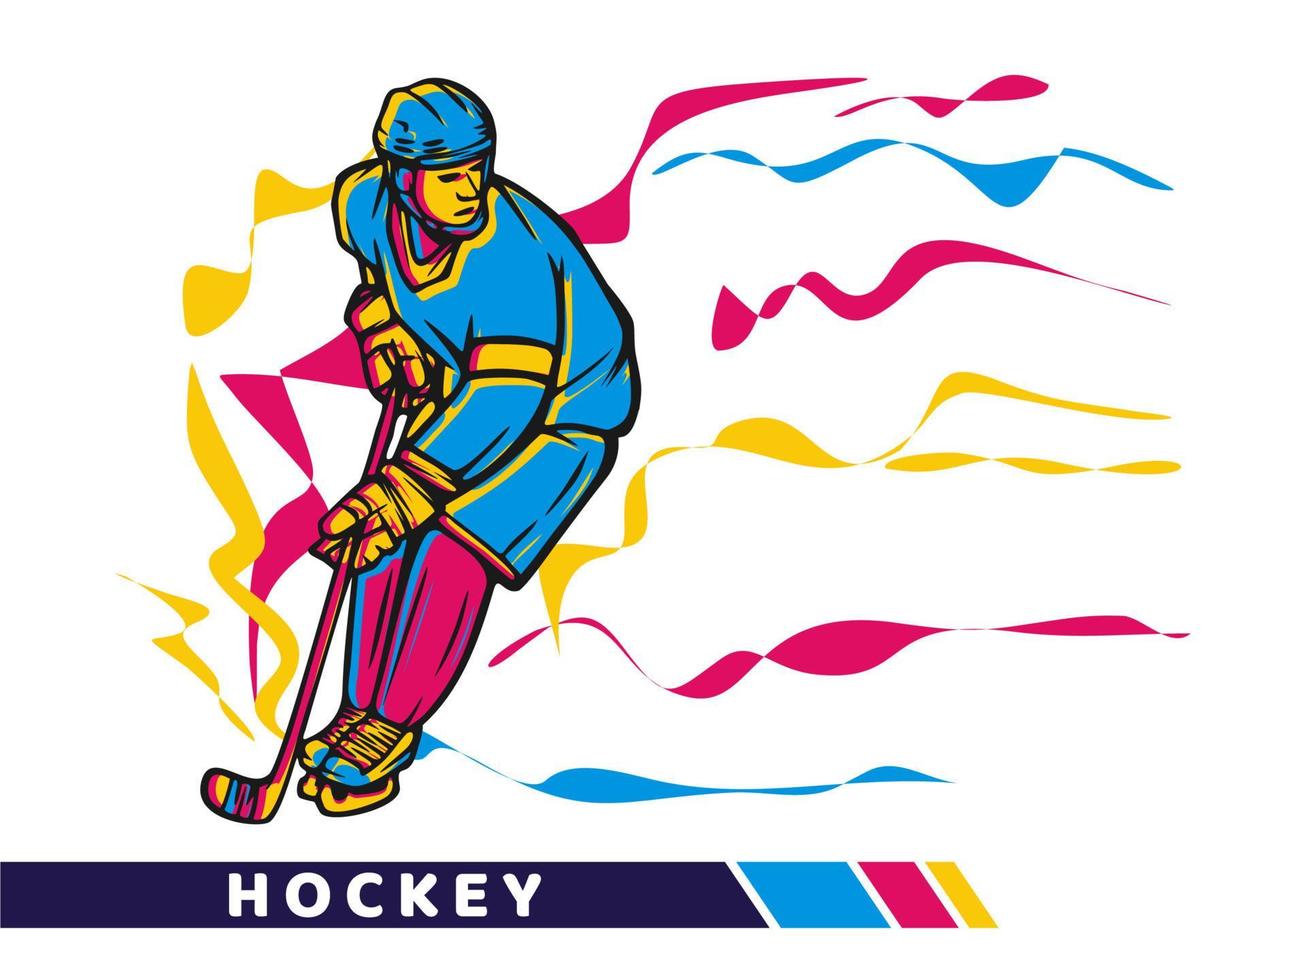 Vektor-Illustration-Hockey-Spieler mit Bewegung Farbe Vektorgrafiken vektor